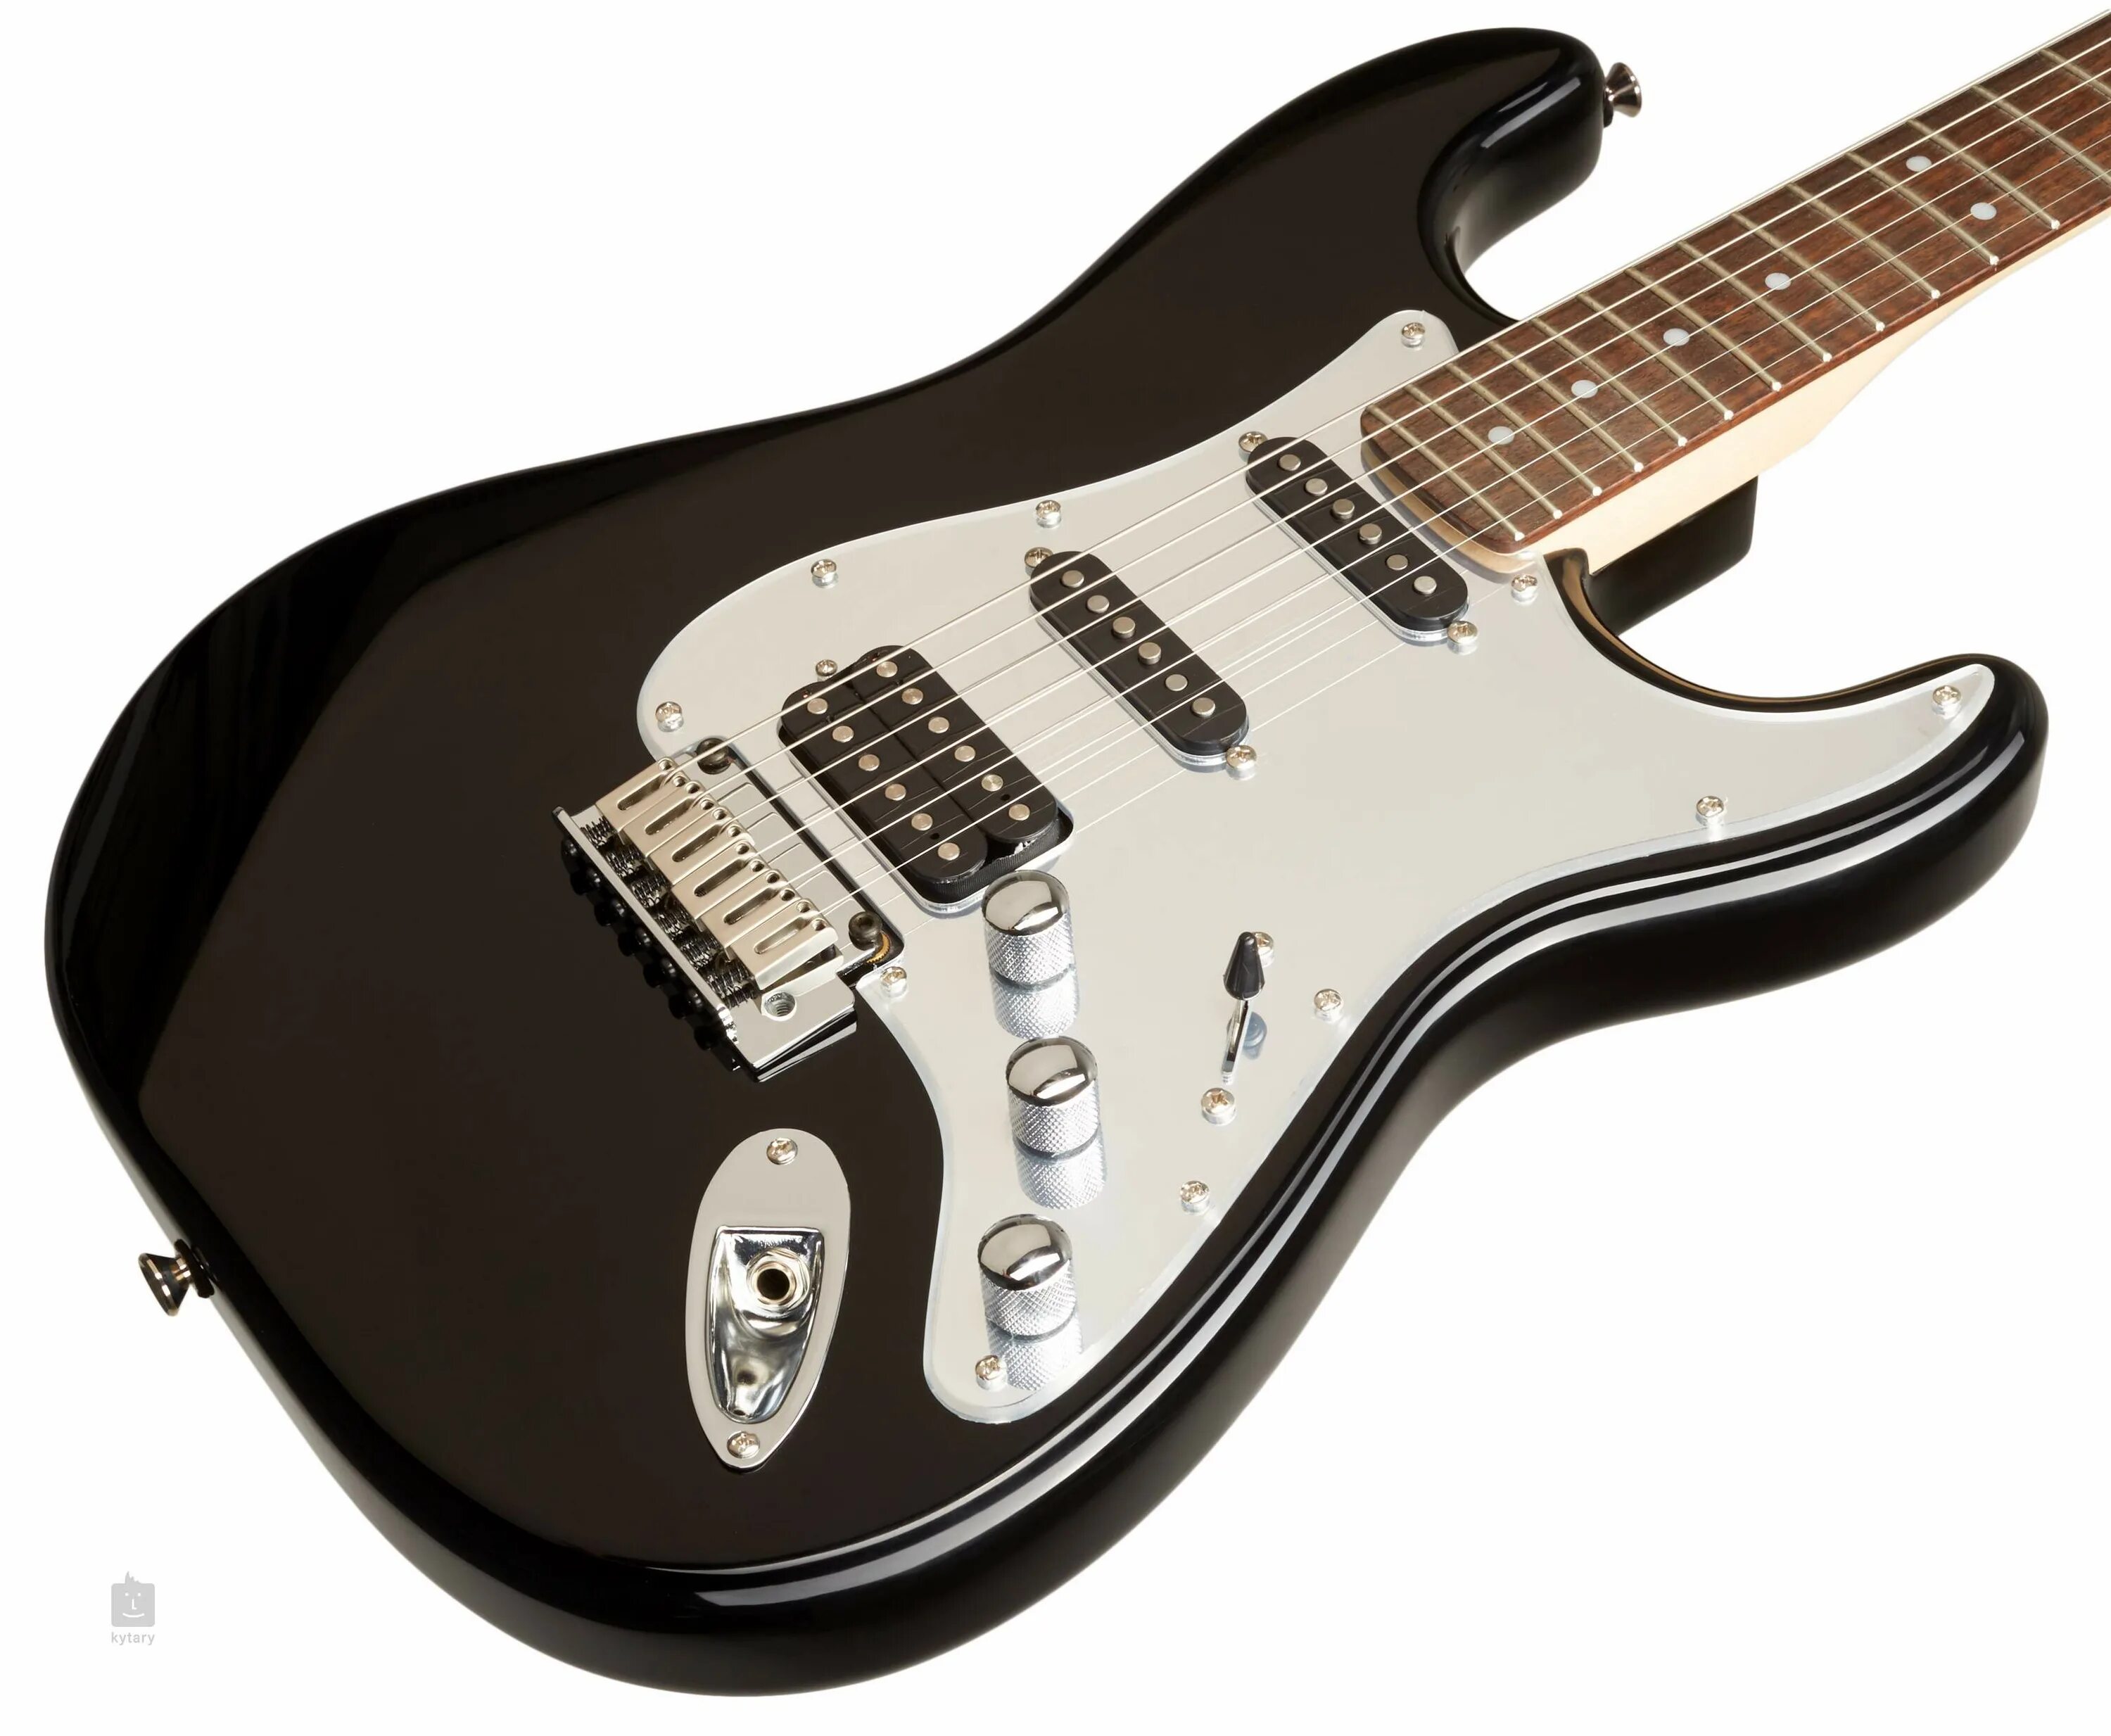 Фендер стратокастер сквайр Блэк. Squier Standard Stratocaster 2000 Black. Пикгард для электрогитары Fender Squier Bullet Stratocaster HSS. Гитара lead-1 Stratocaster.